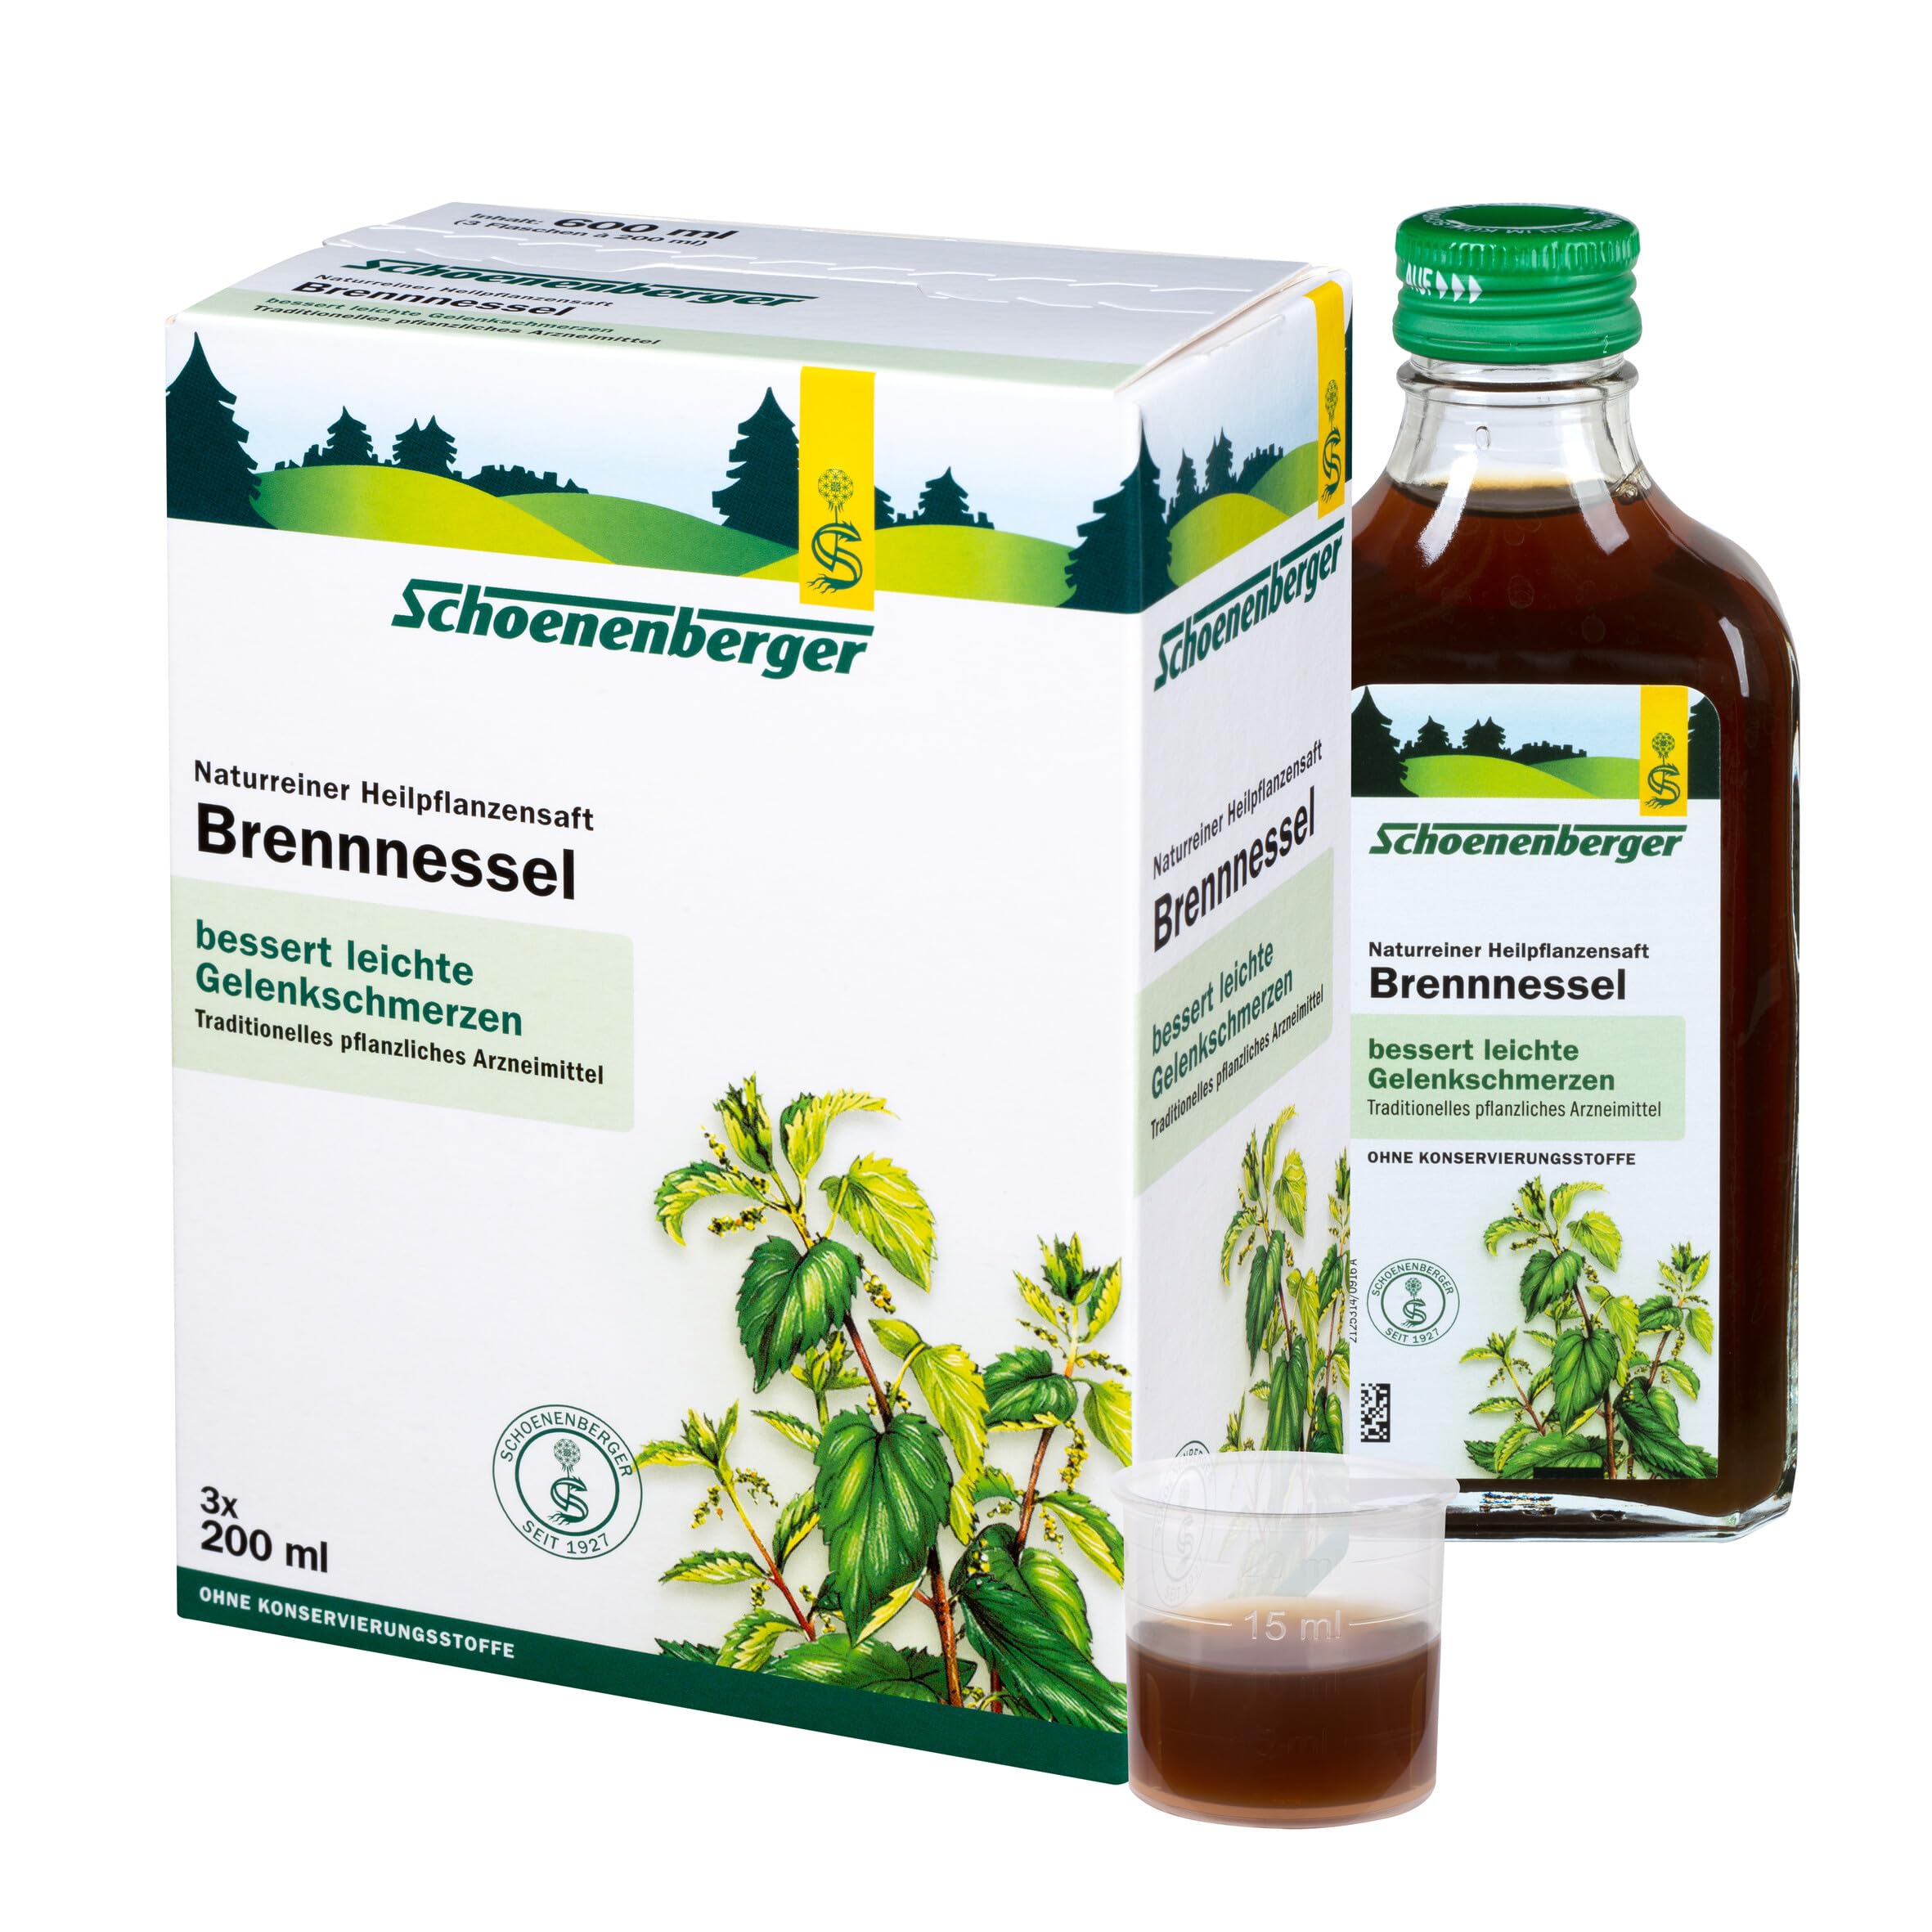 Schoenenberger - Brennnessel naturreiner Heilpflanzensaft - 3x 200 ml Glasflasche - freiverkäufliches Arzneimittel - zur Besserung von leichten Gelenkschmerzen - bio